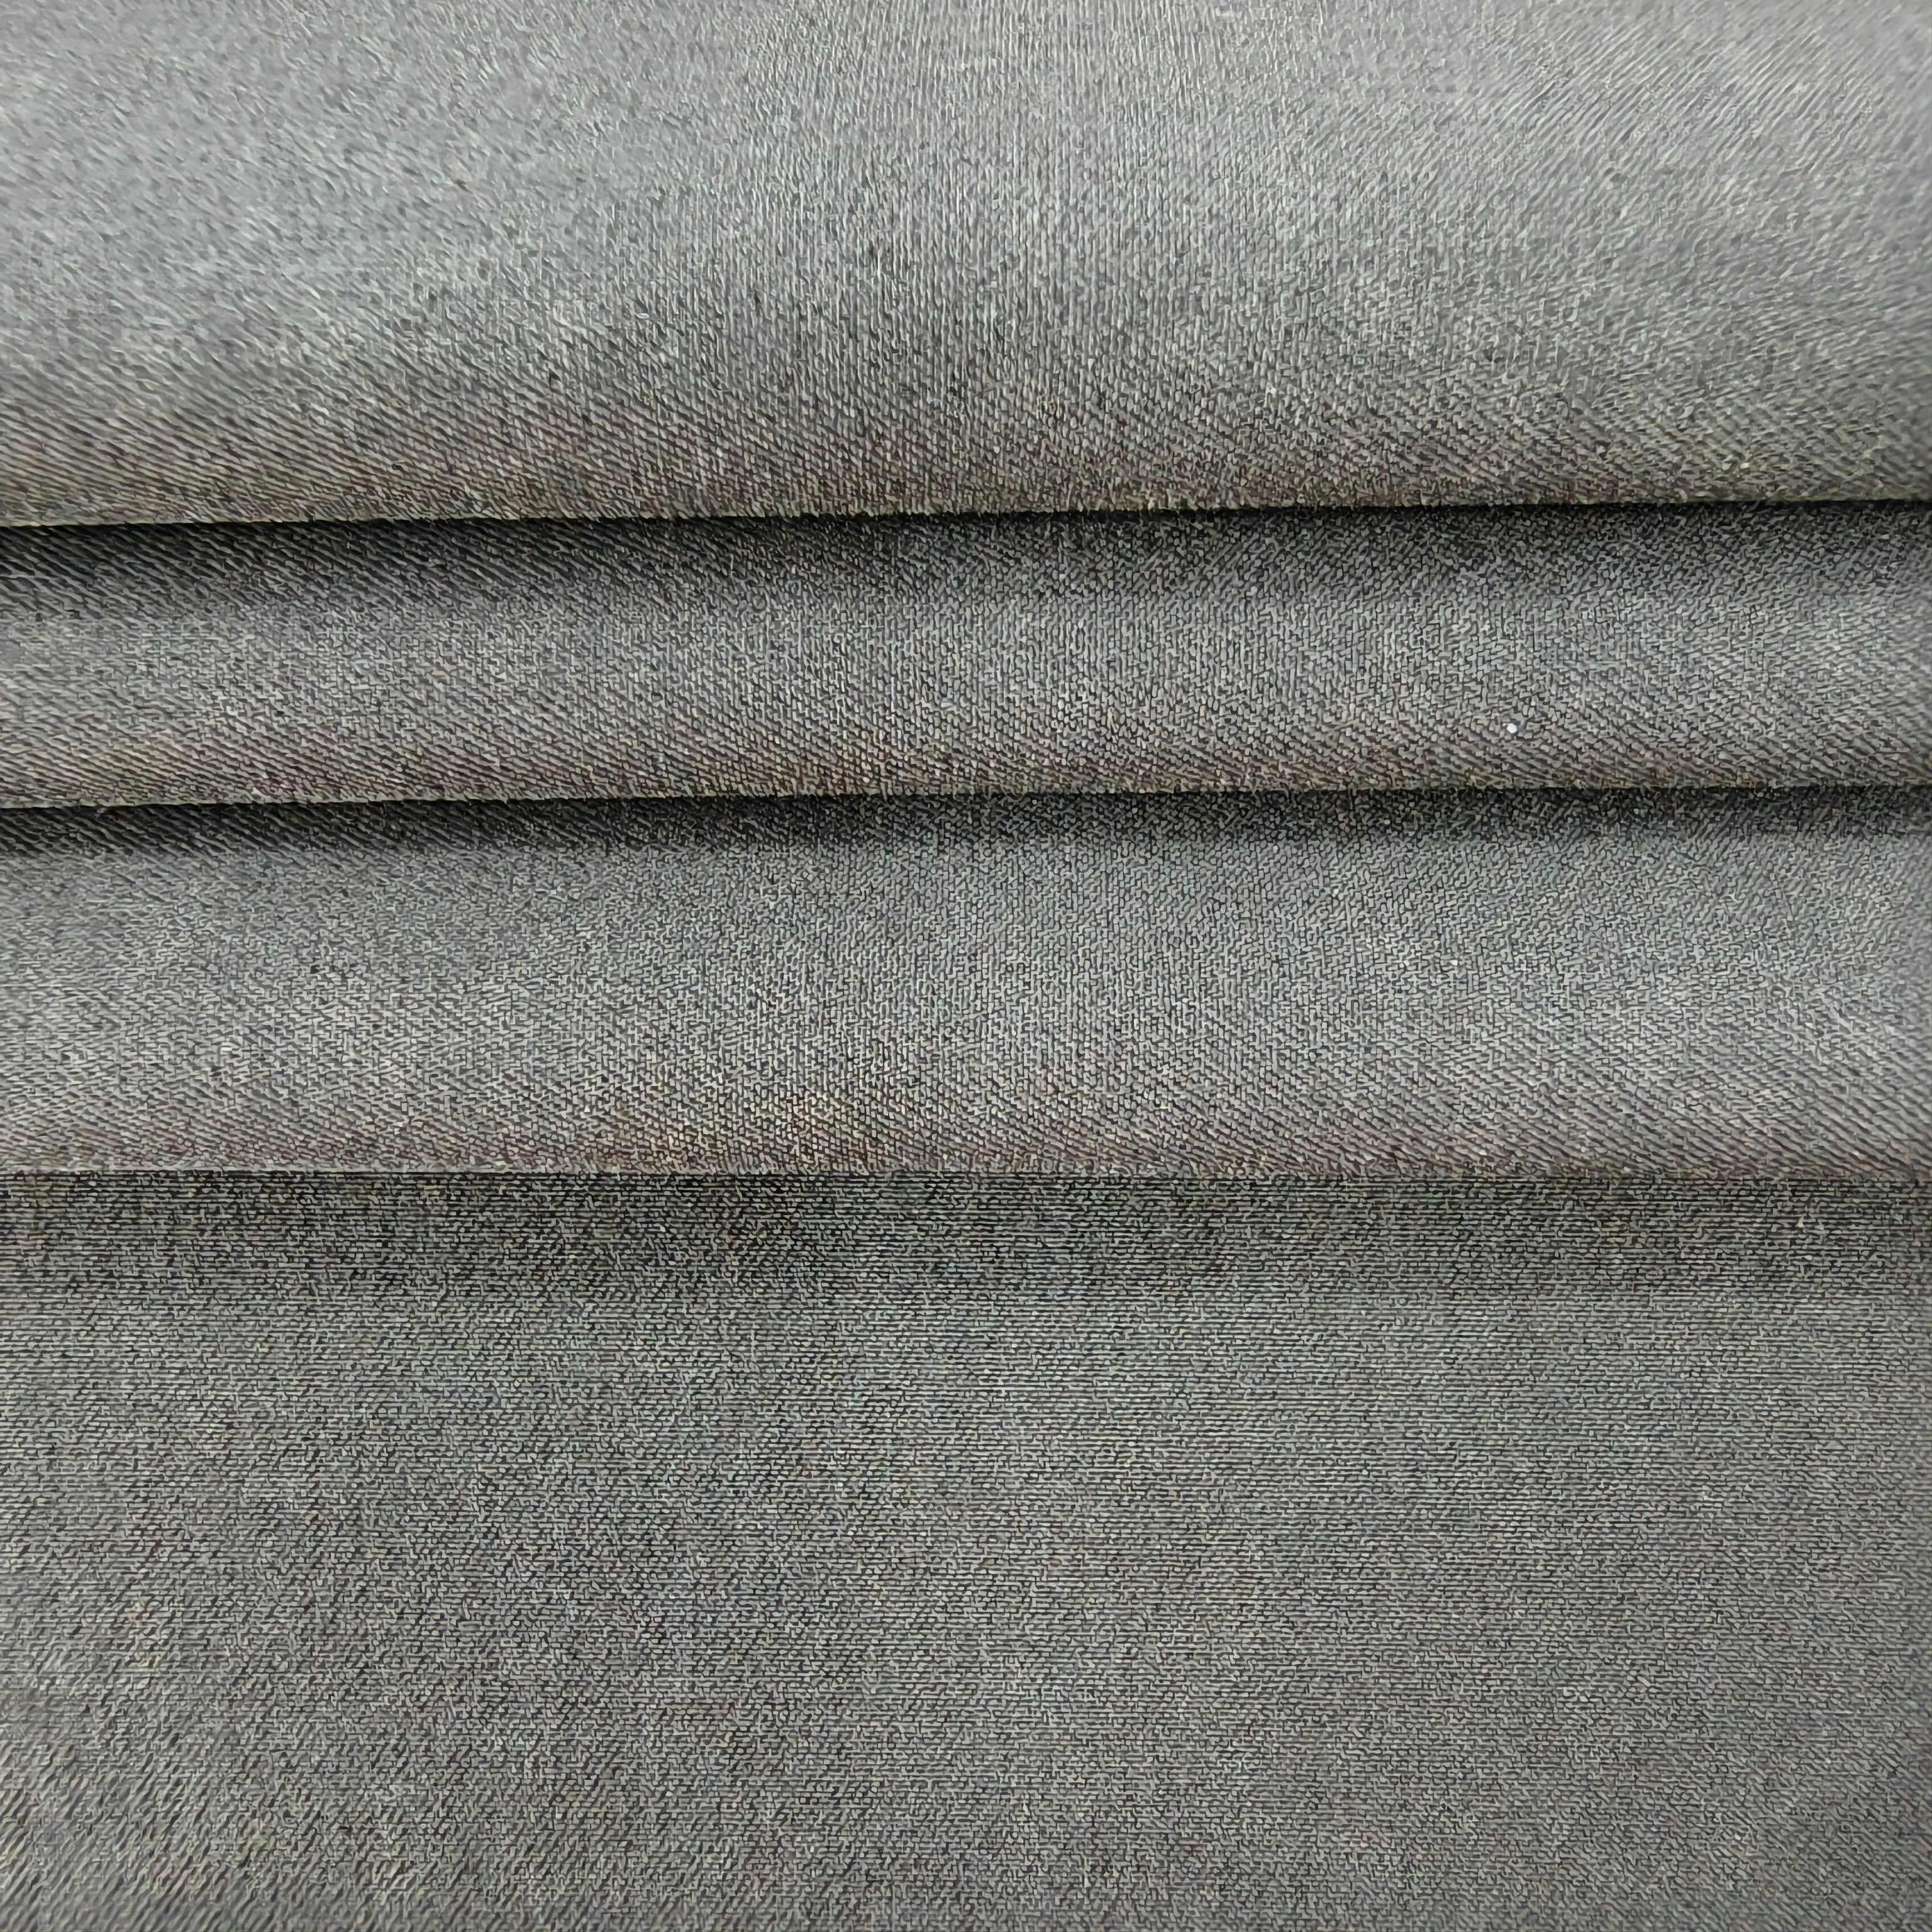 AUC-CS-R183 thân thiện với môi dệt căng Twill vải sử dụng cho hàng may mặc